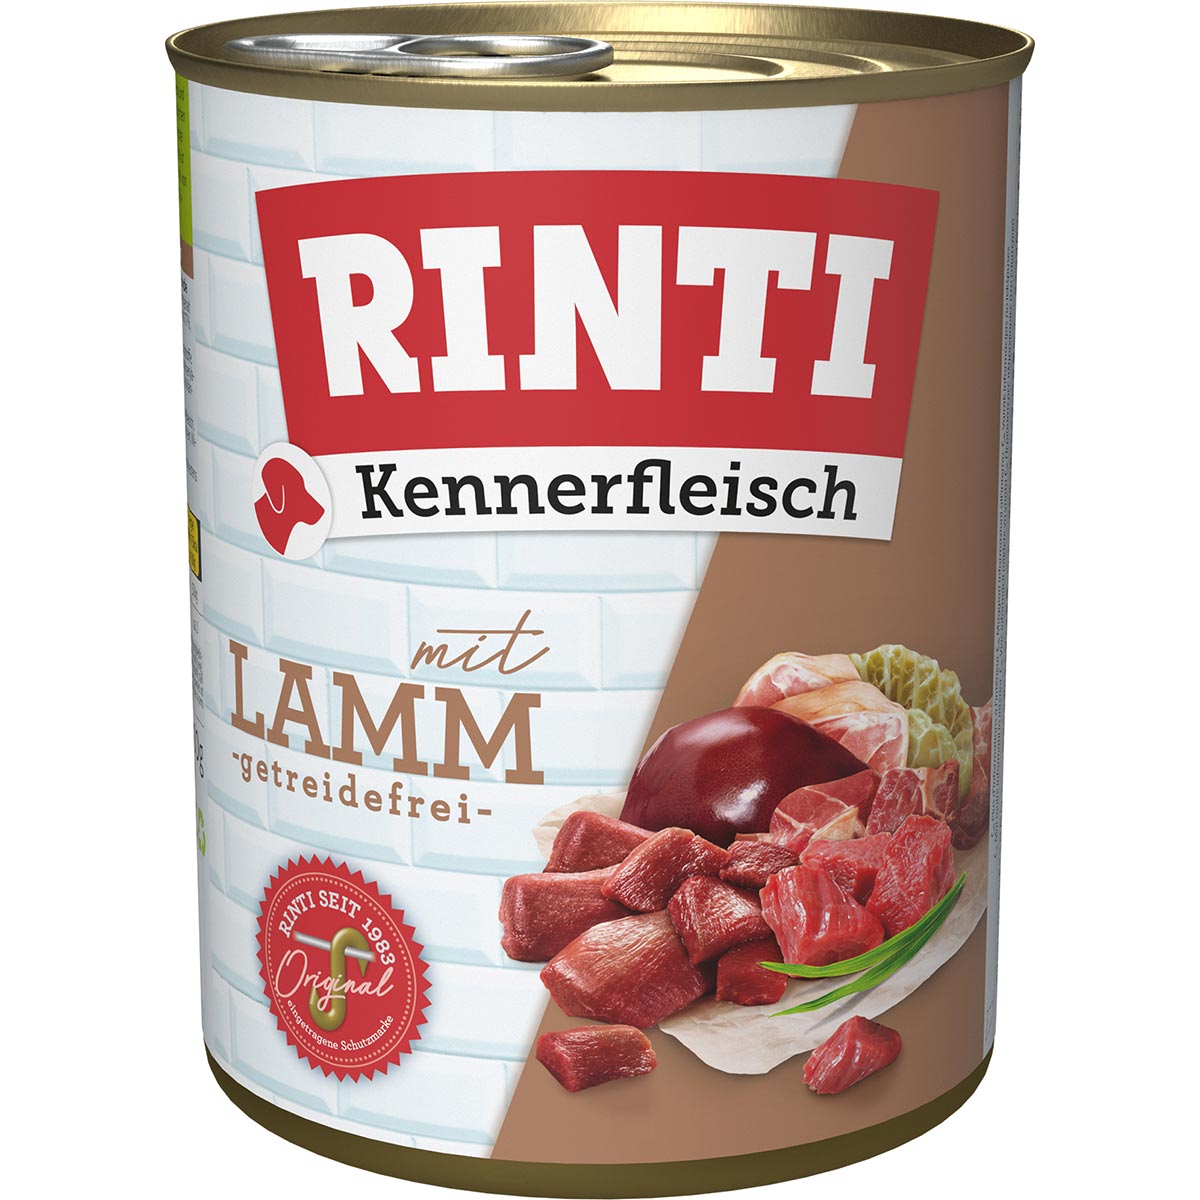 Rinti Kennerfleisch Lamm 12x800g von Rinti